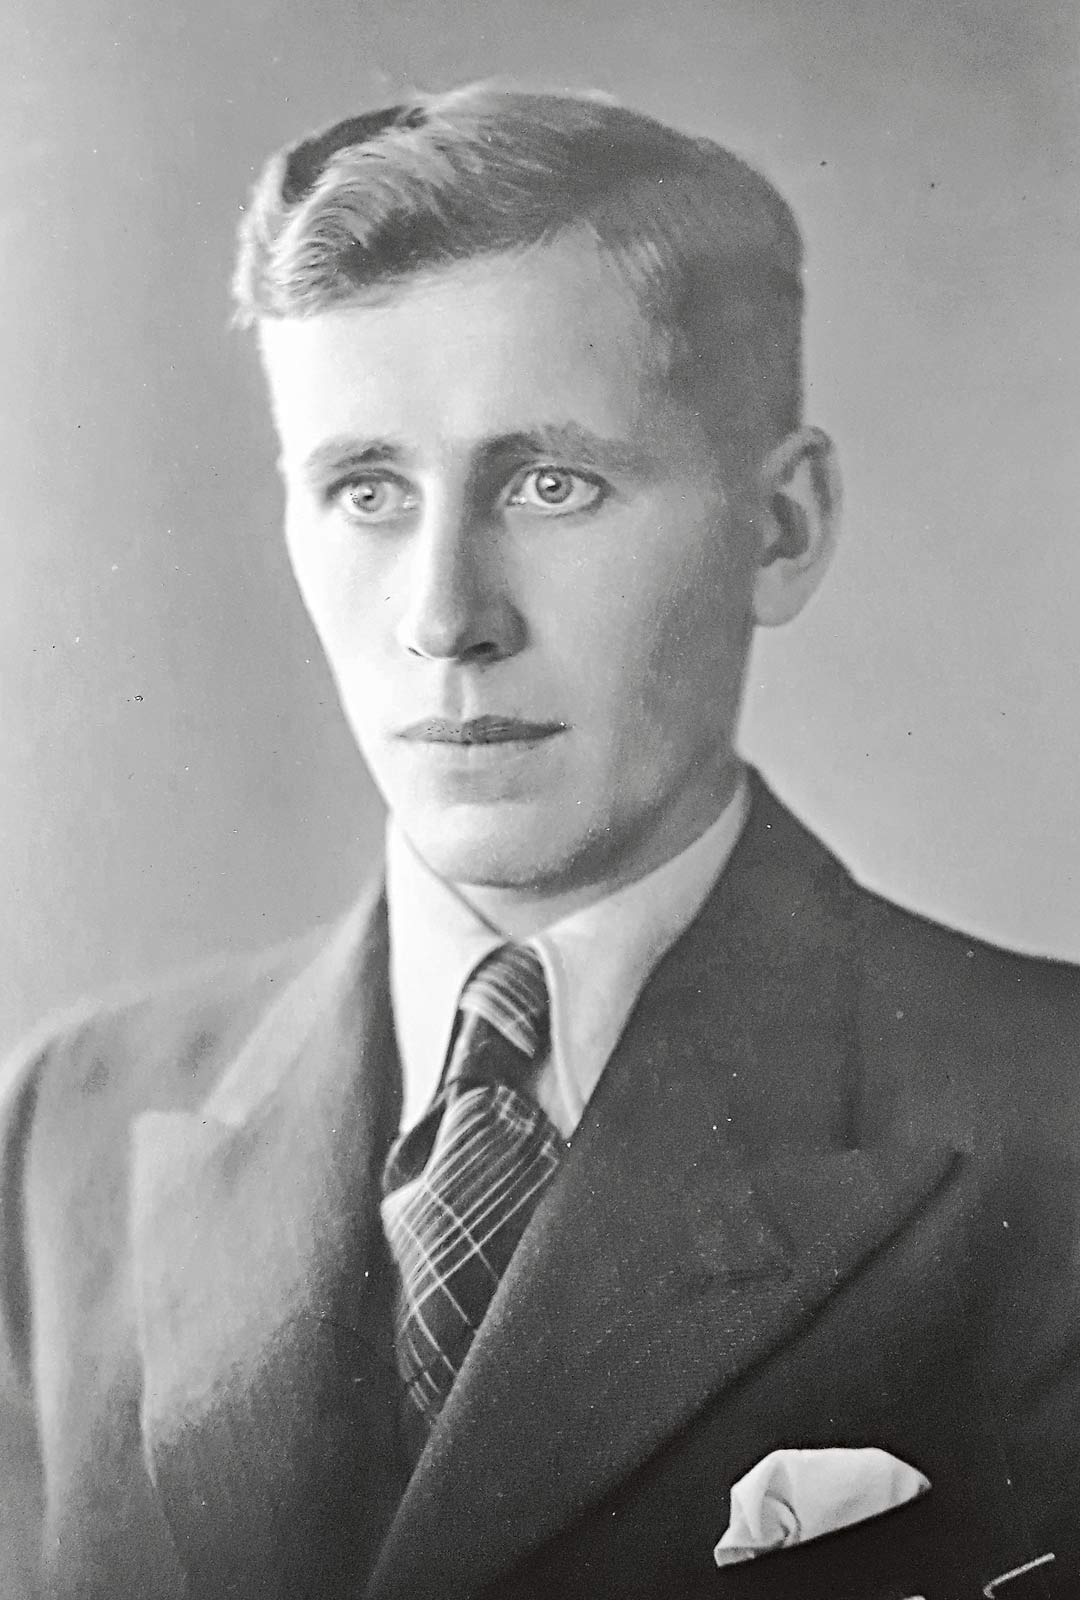 Punikkitaustainen Timo kävi sotaväen Suomen Valkoisessa kaartissa 1933–34 ja erikoistui taistelulähetiksi. Hän kaatui kaksi päivää ennen talvisodan päättymistä.